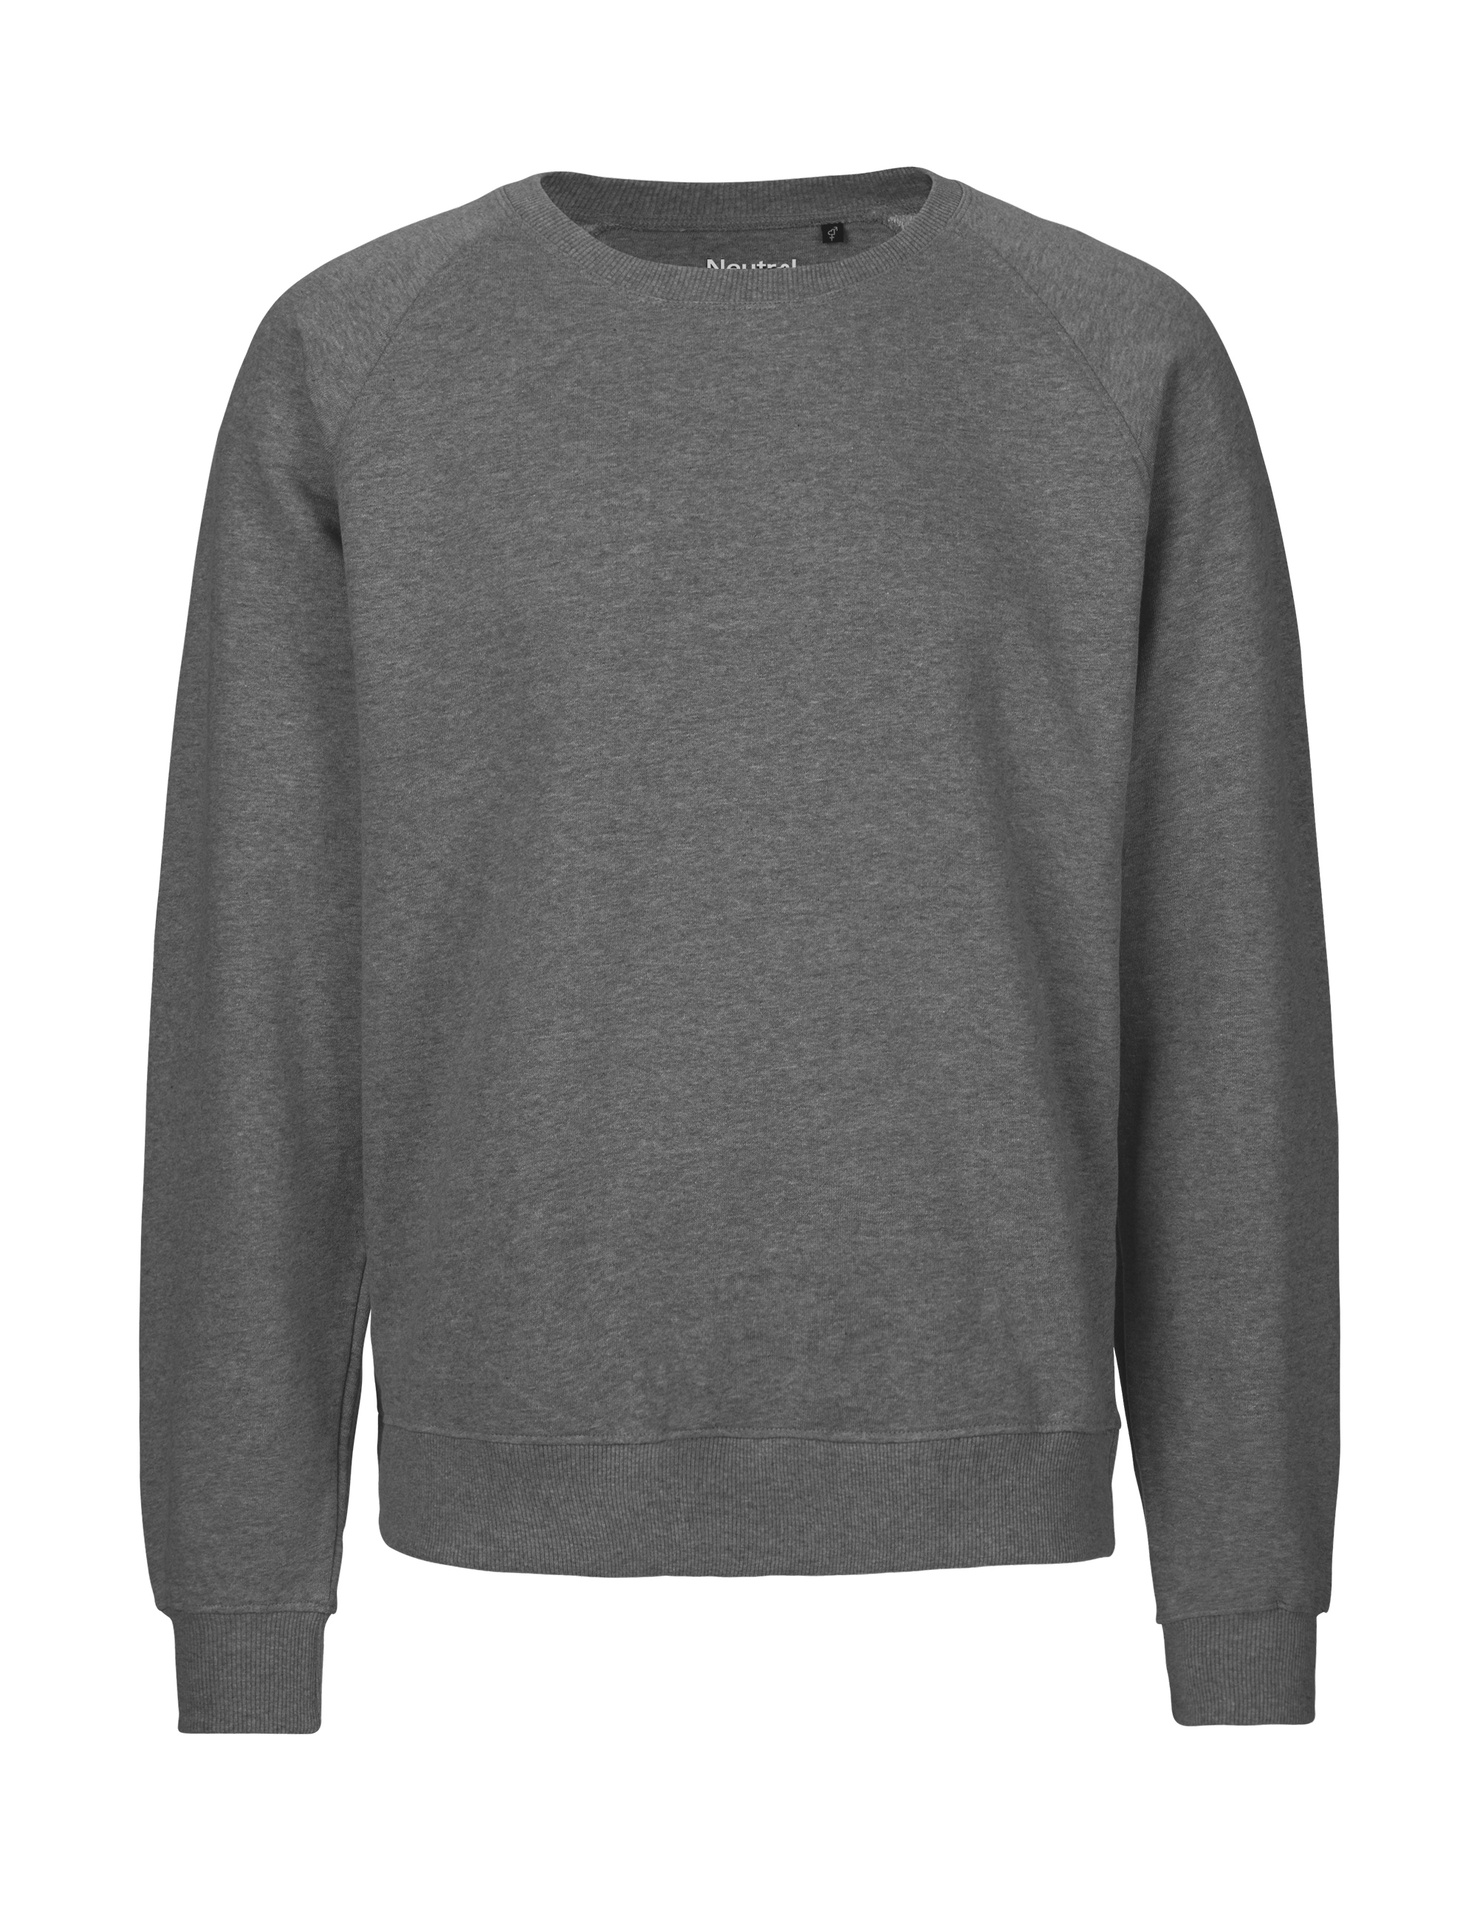 [PR/02705] Unisex Sweatshirt (Dark Heather 08, 5XL)